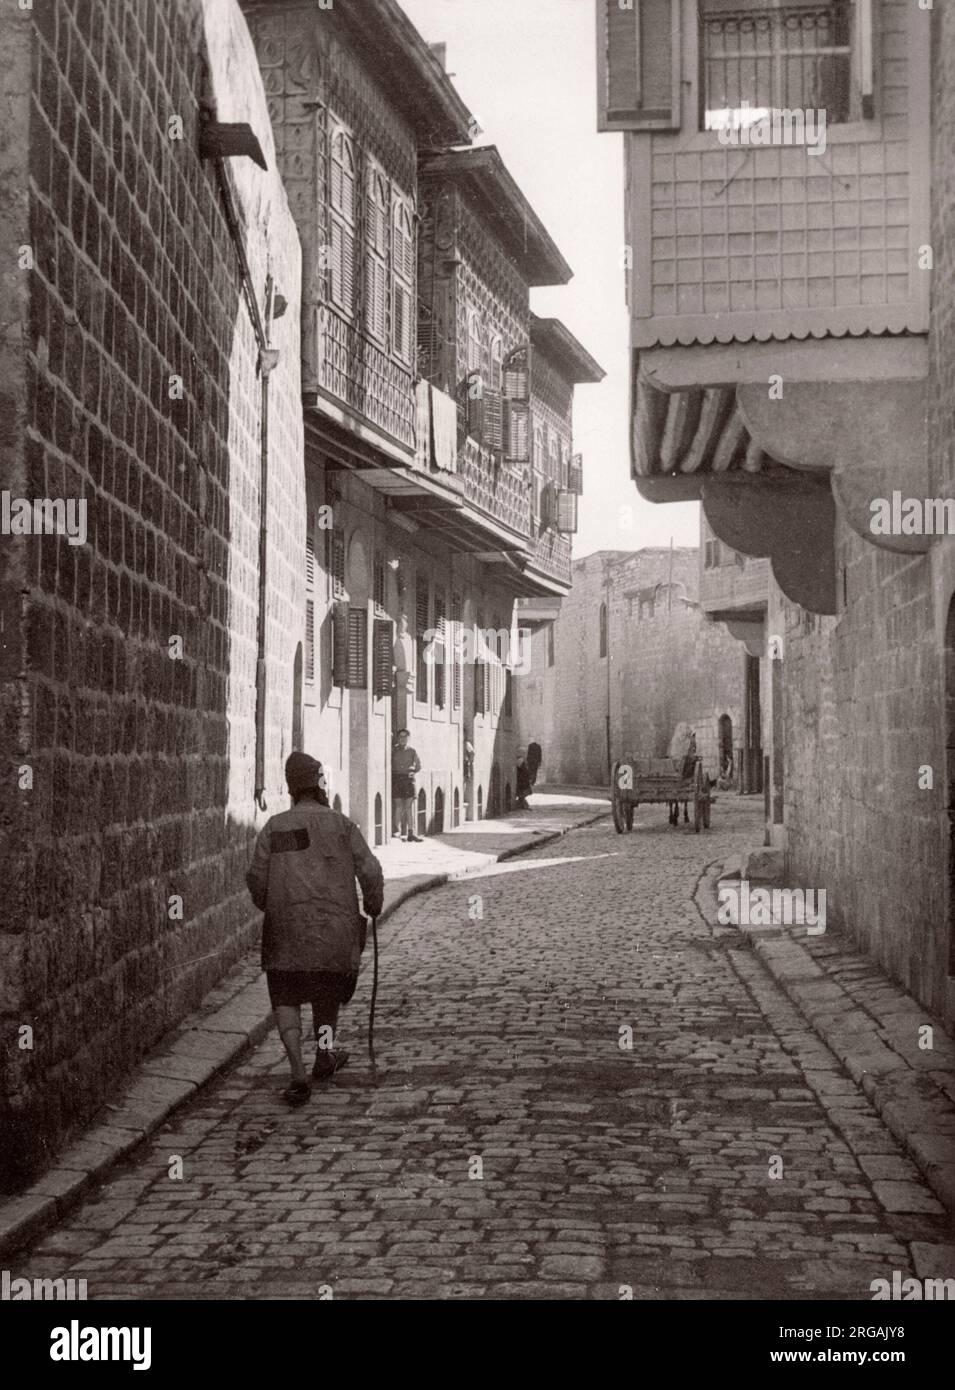 1943 Moyen-Orient Syrie - scène à Alep - vue dans la rue Photographie d'un officier de recrutement de l'armée britannique stationné en Afrique de l'est et au Moyen-Orient pendant la Seconde Guerre mondiale Banque D'Images